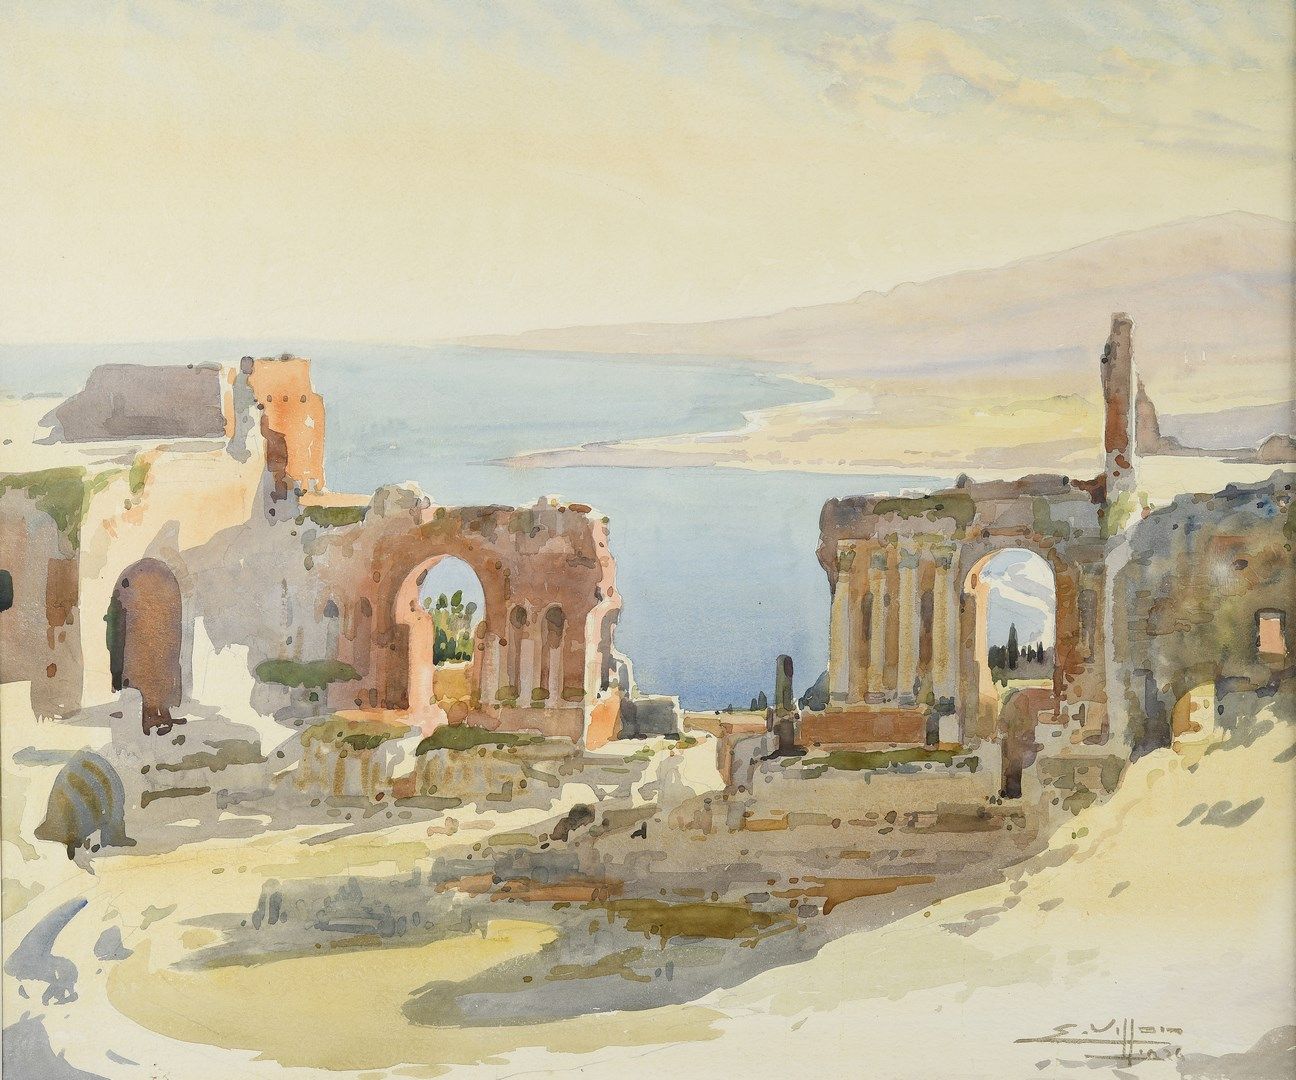 Null VILLON Eugène, 1879-1951

Rovine di Taormina, Sicilia, 1926

acquerello e g&hellip;